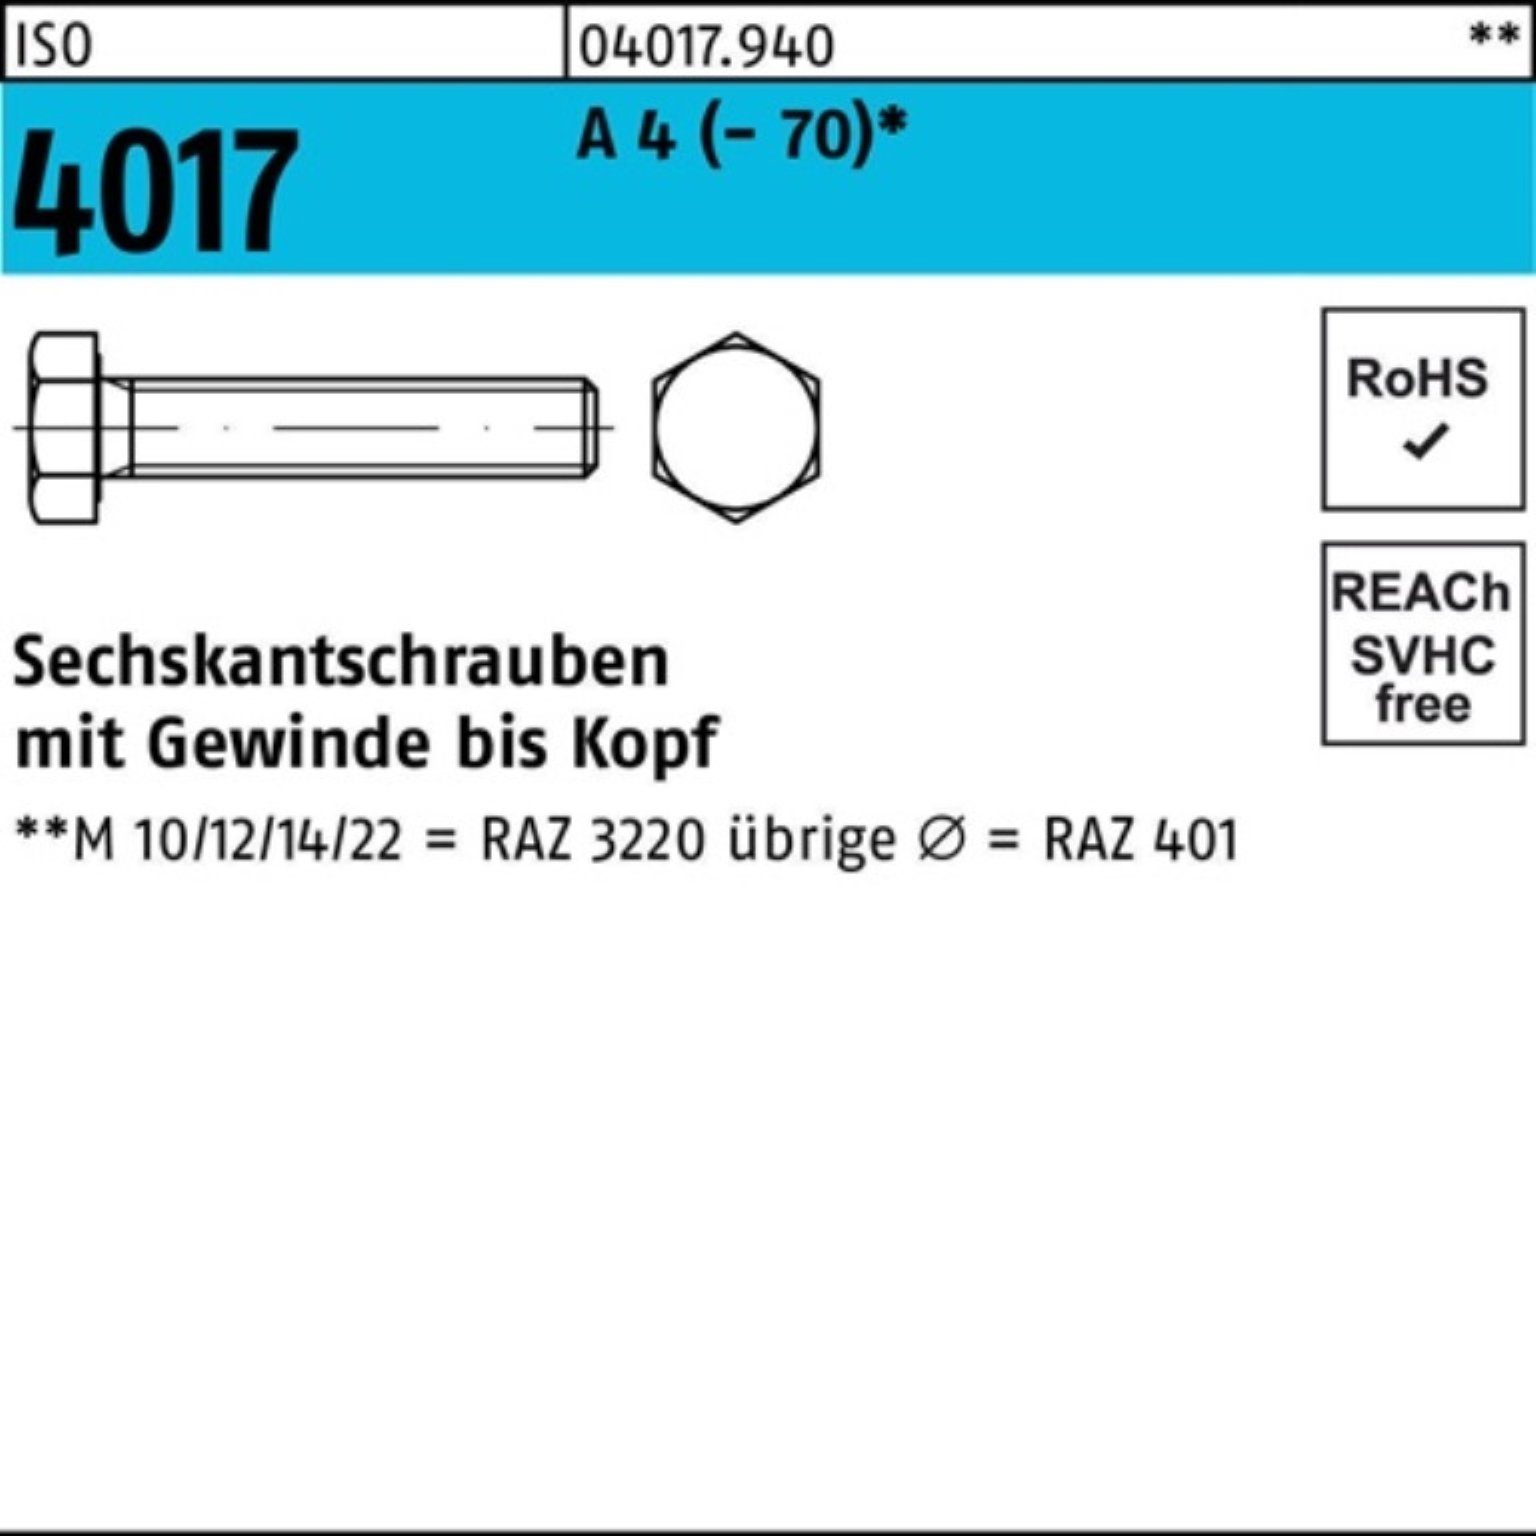 Bufab Sechskantschraube 100er Pack Sechskantschraube ISO 4017 VG M20x 70 A 4 (70) 25 Stück